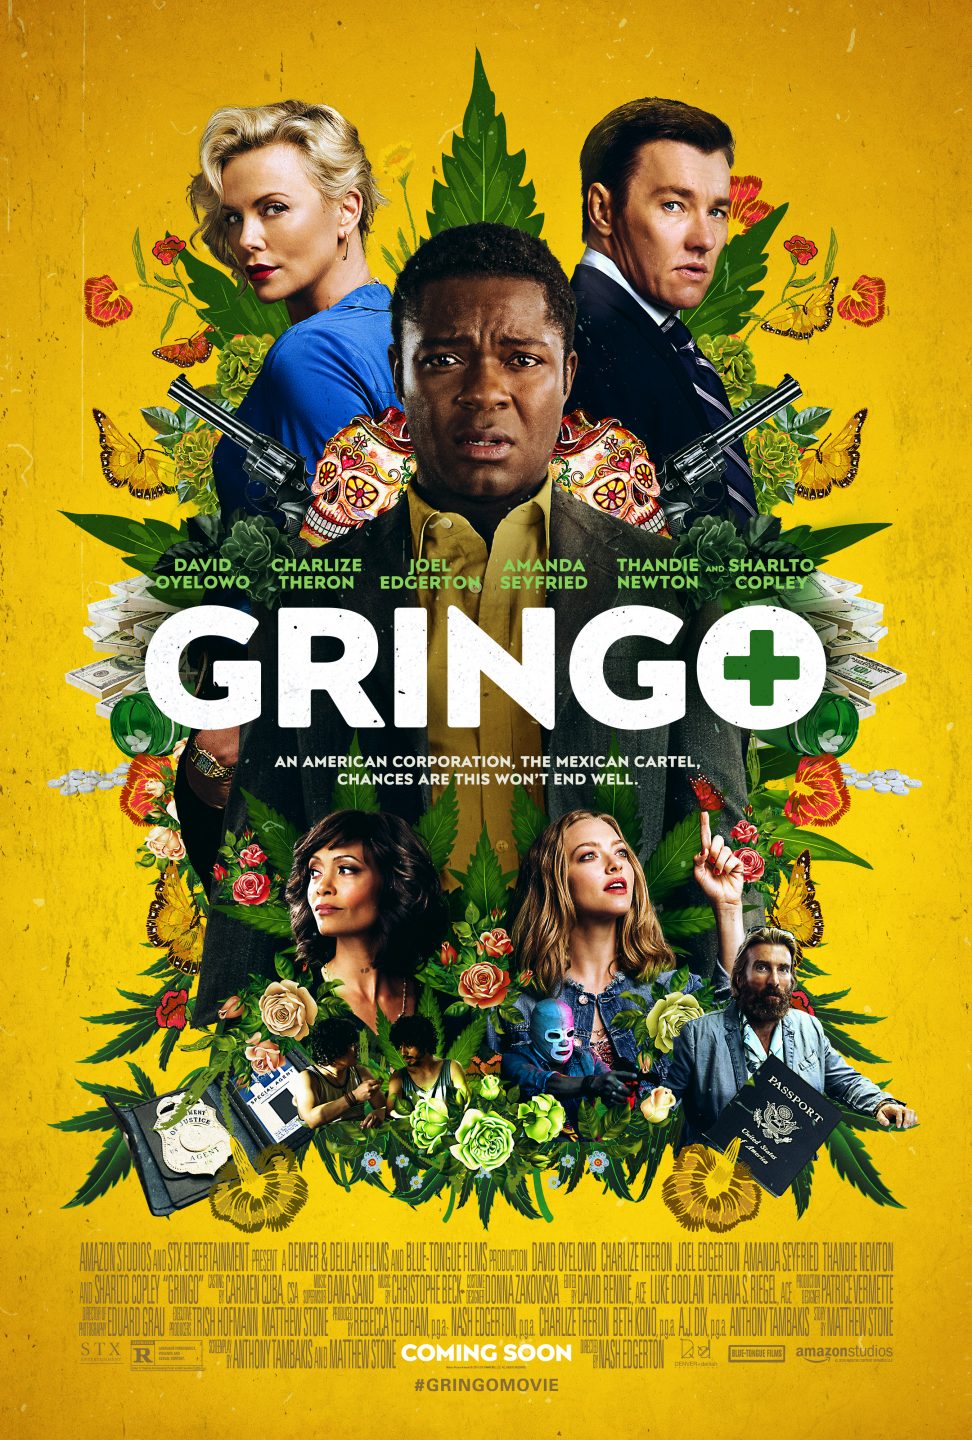 Gringo poster (Amazon Studios/STX Entertainment)